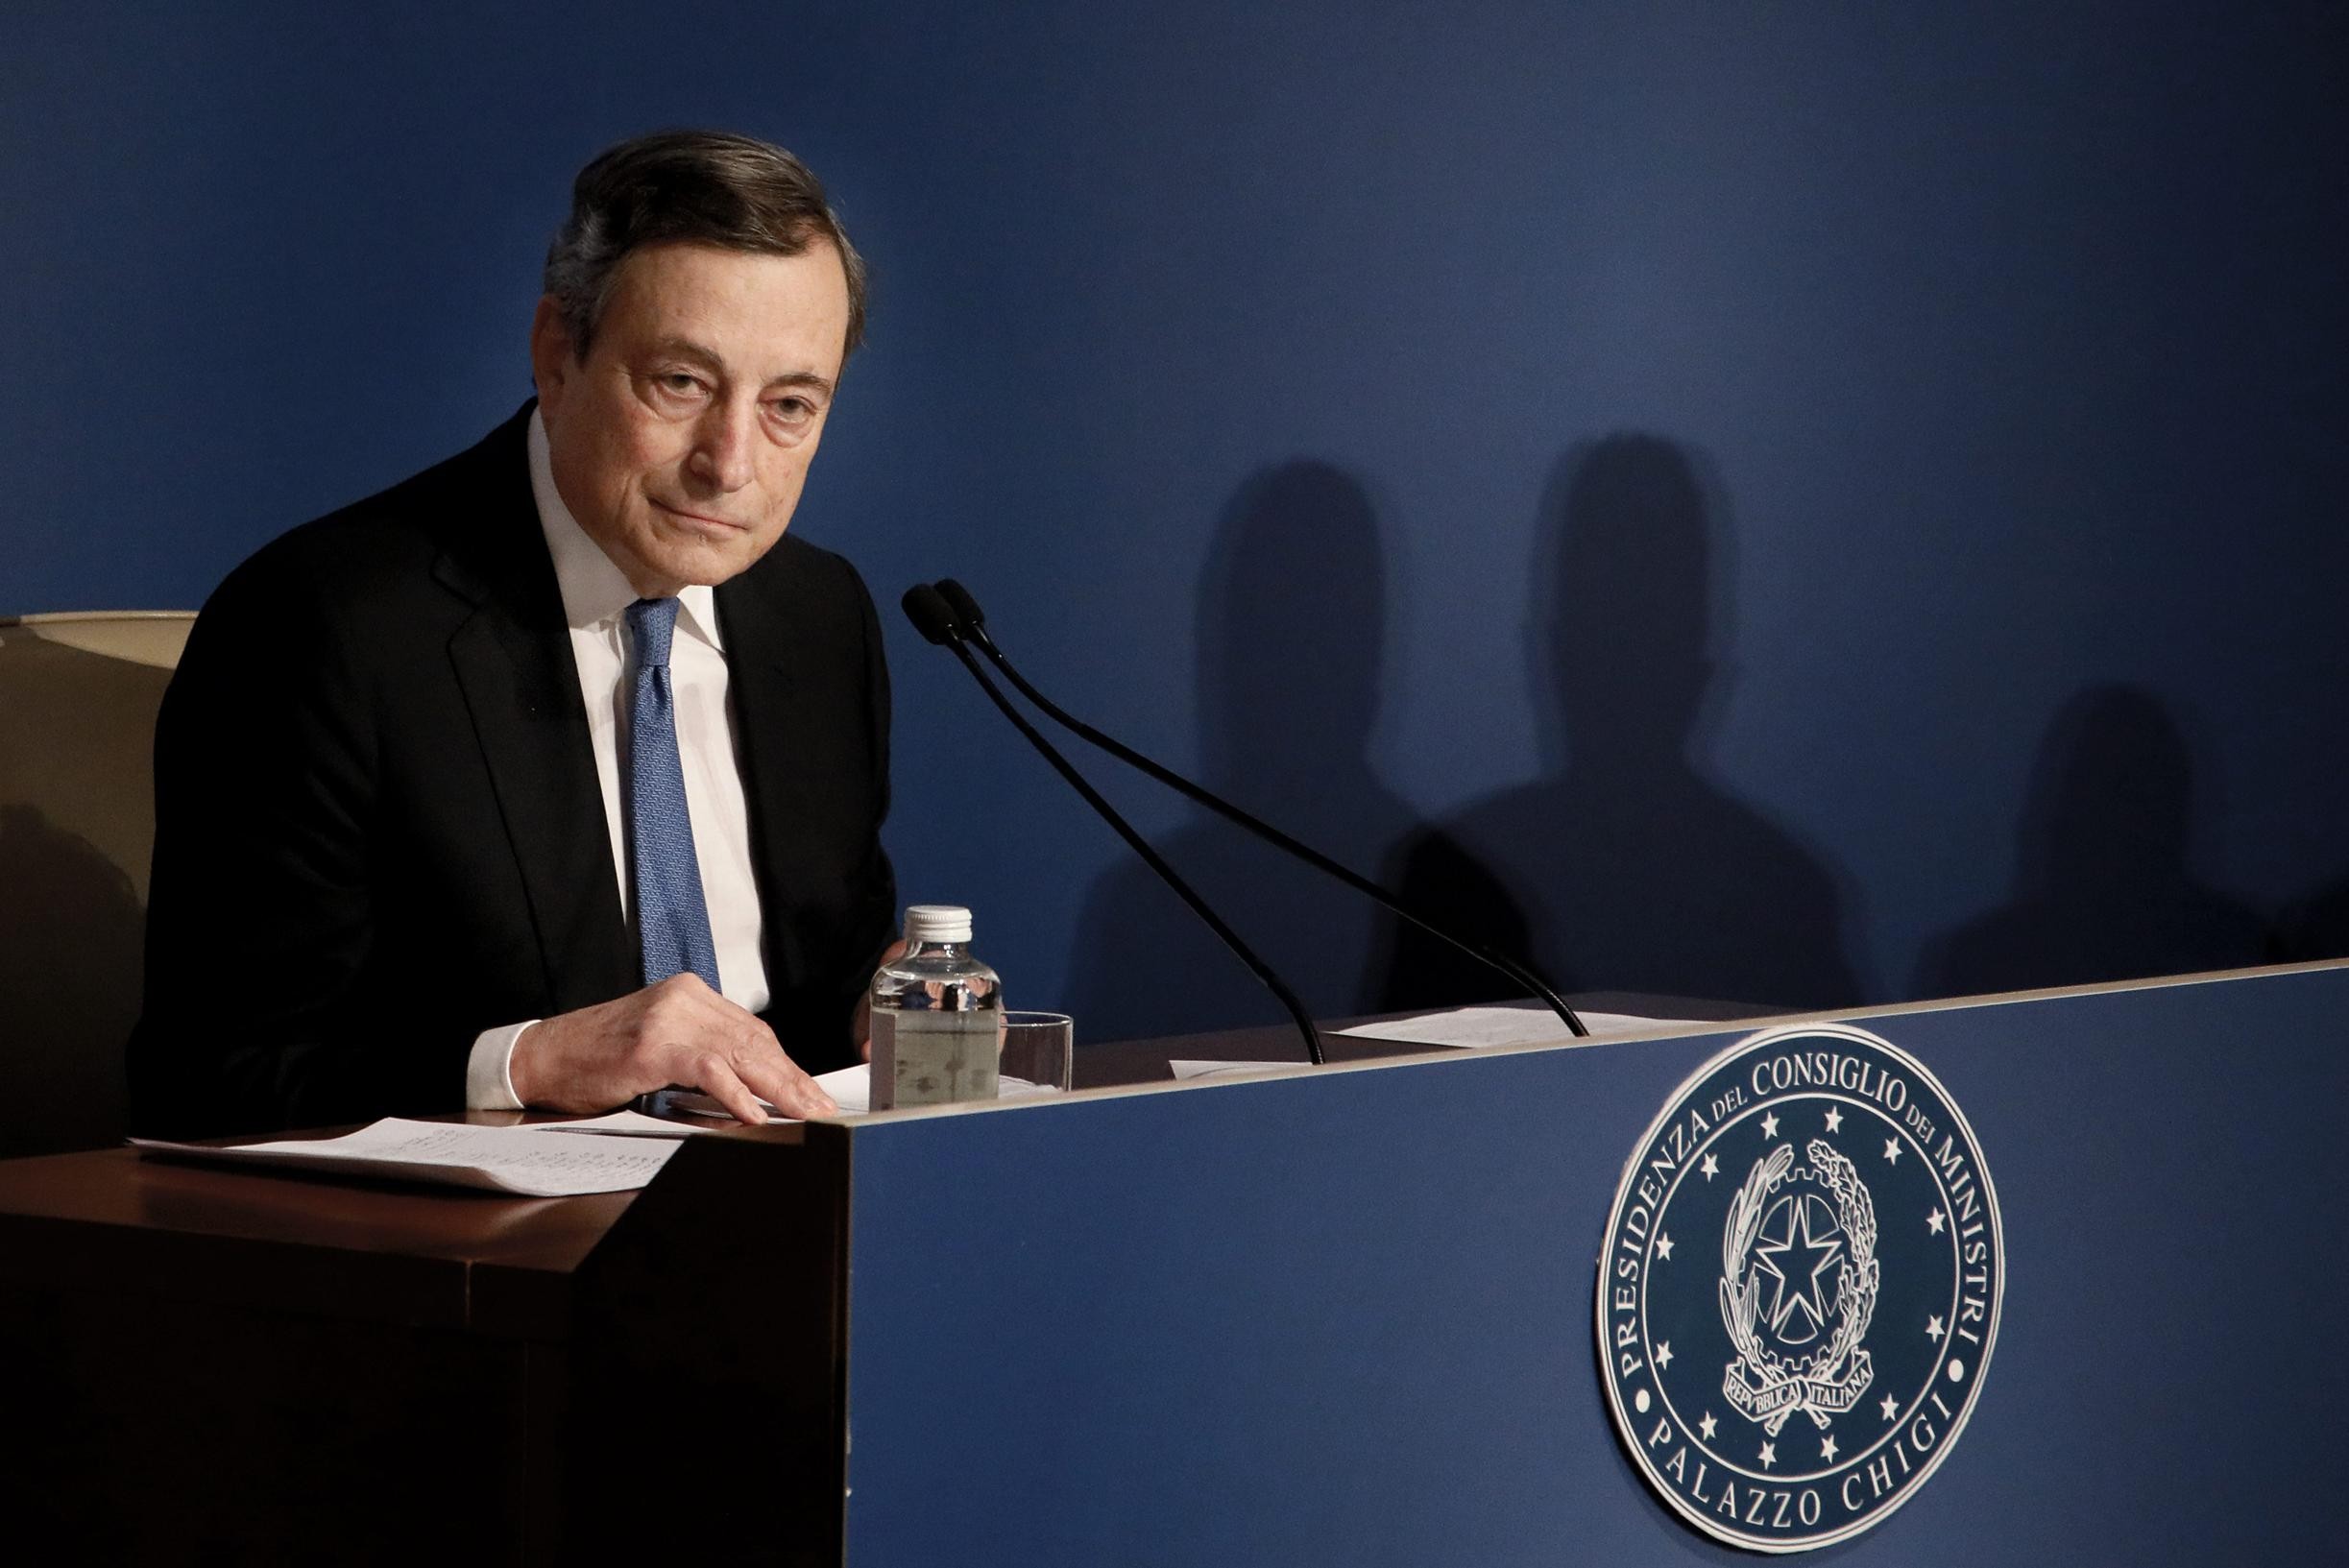 Le elezioni presidenziali si terranno in Italia il 24 gennaio e Mario Draghi è il favorito